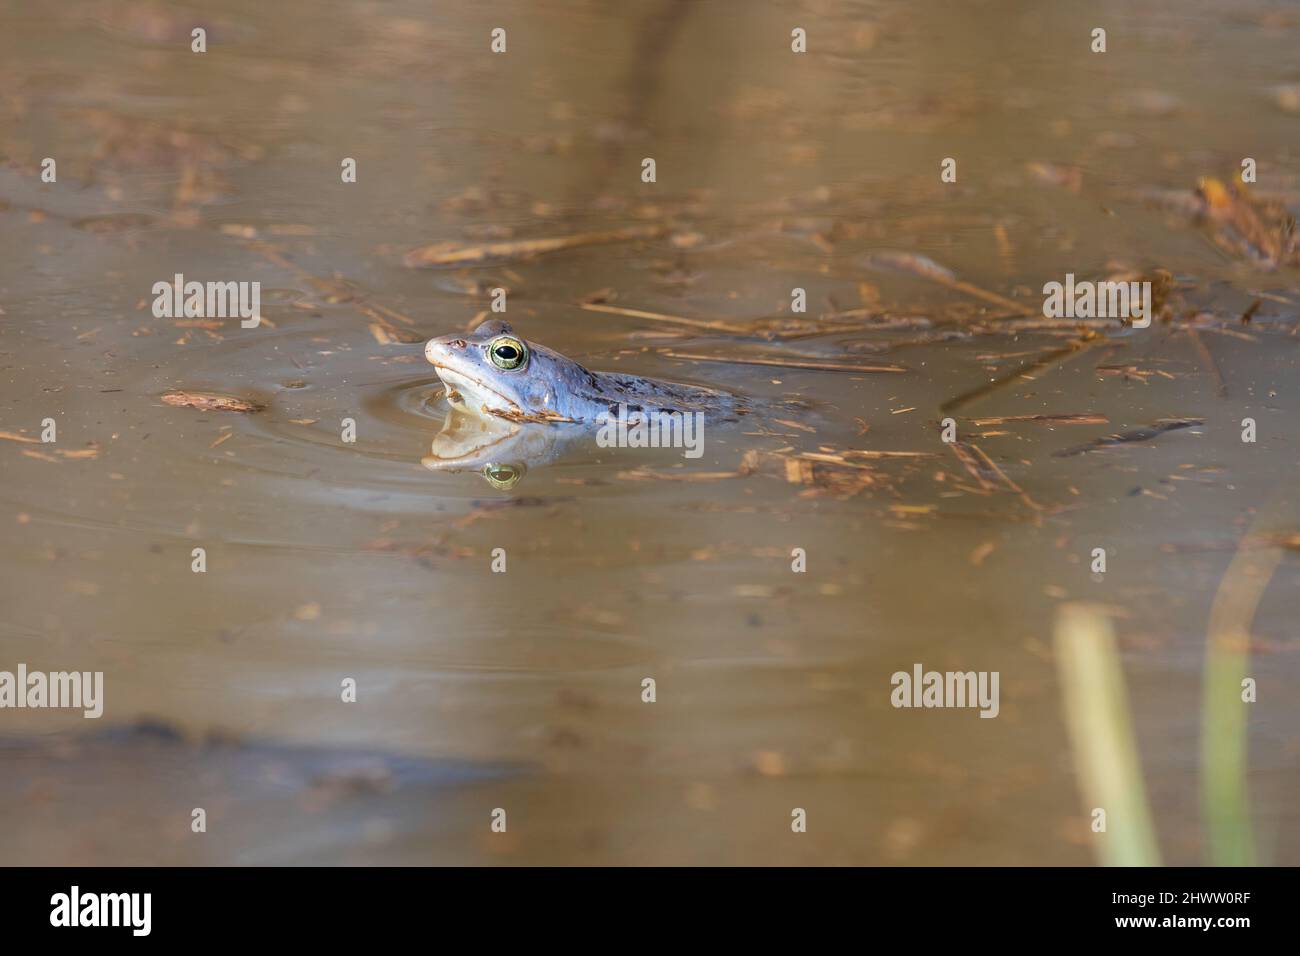 Rana blu - rana Arvalis sulla superficie di una palude. Foto di natura selvaggia Foto Stock